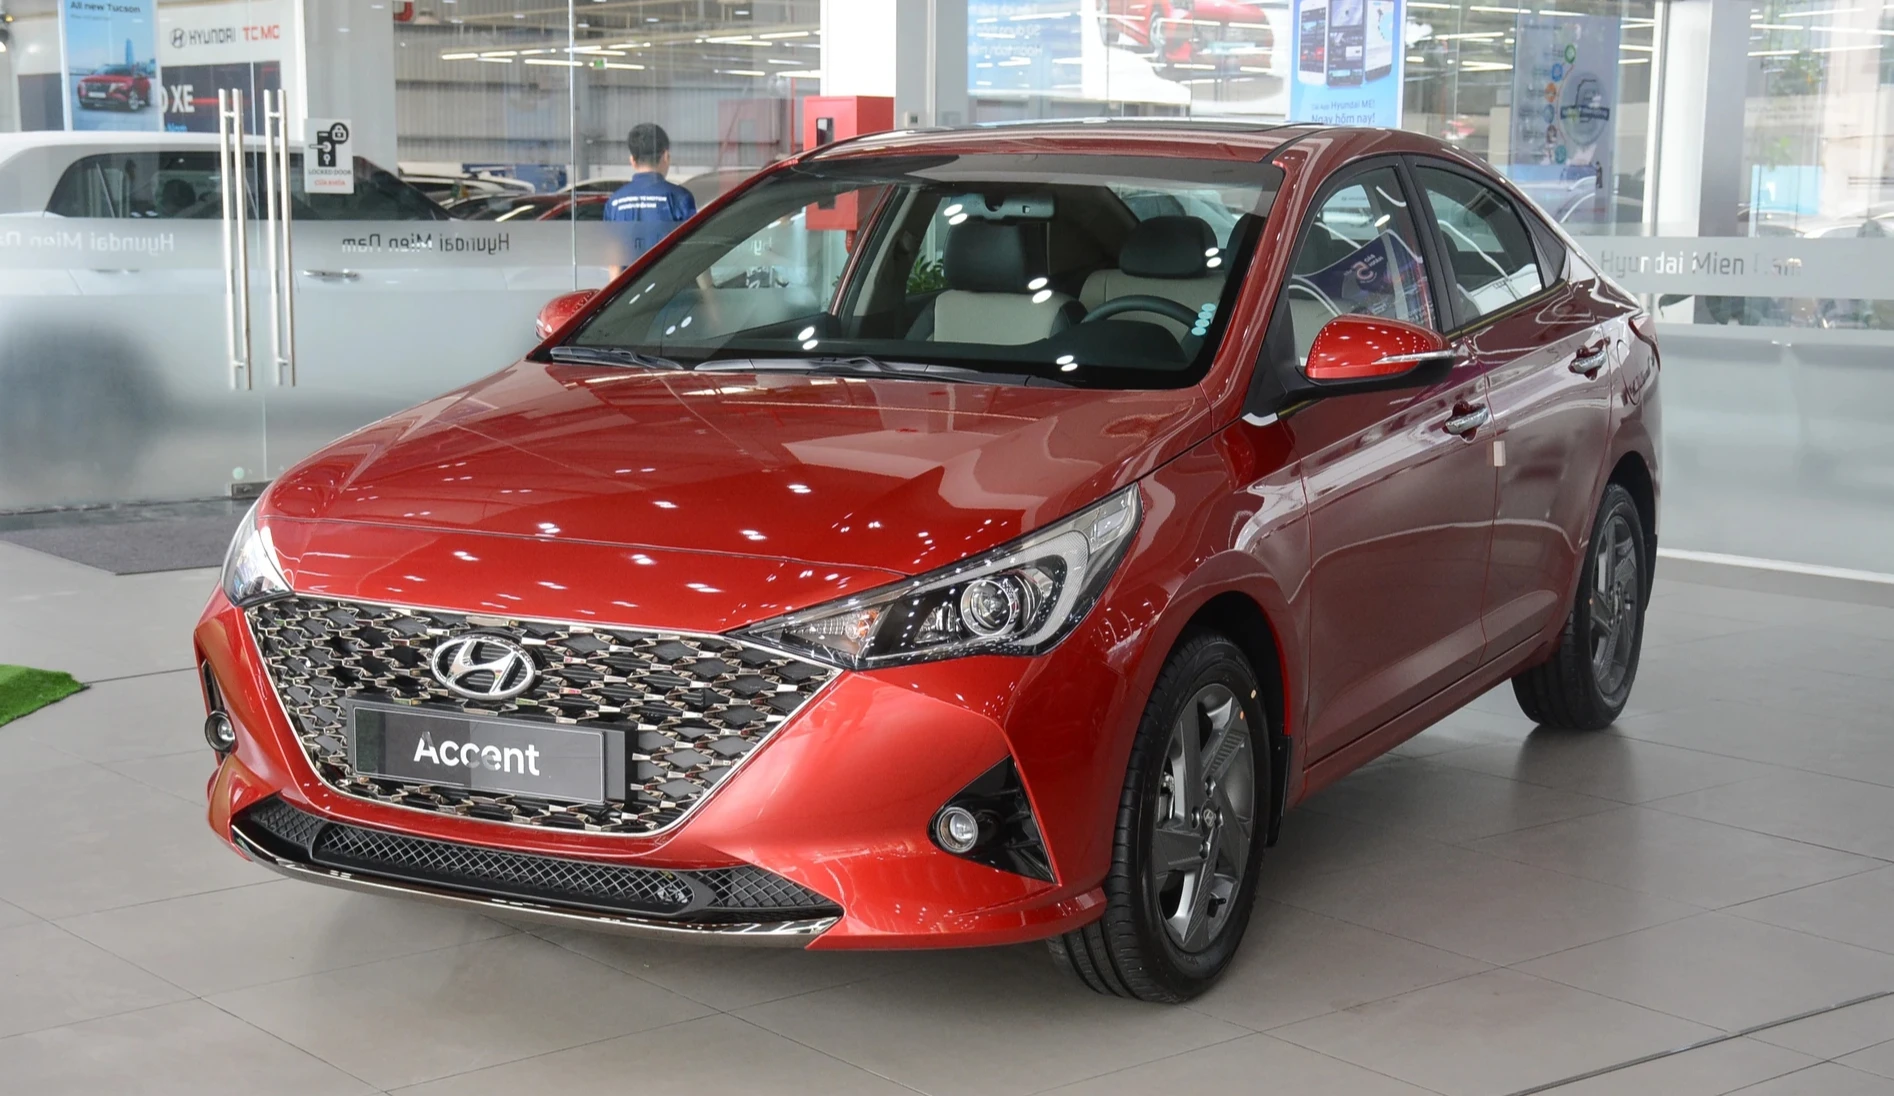 Đại lý giảm giá Hyundai Accent, xả hàng tồn kho nhường chỗ cho thế hệ mới- Ảnh 2.